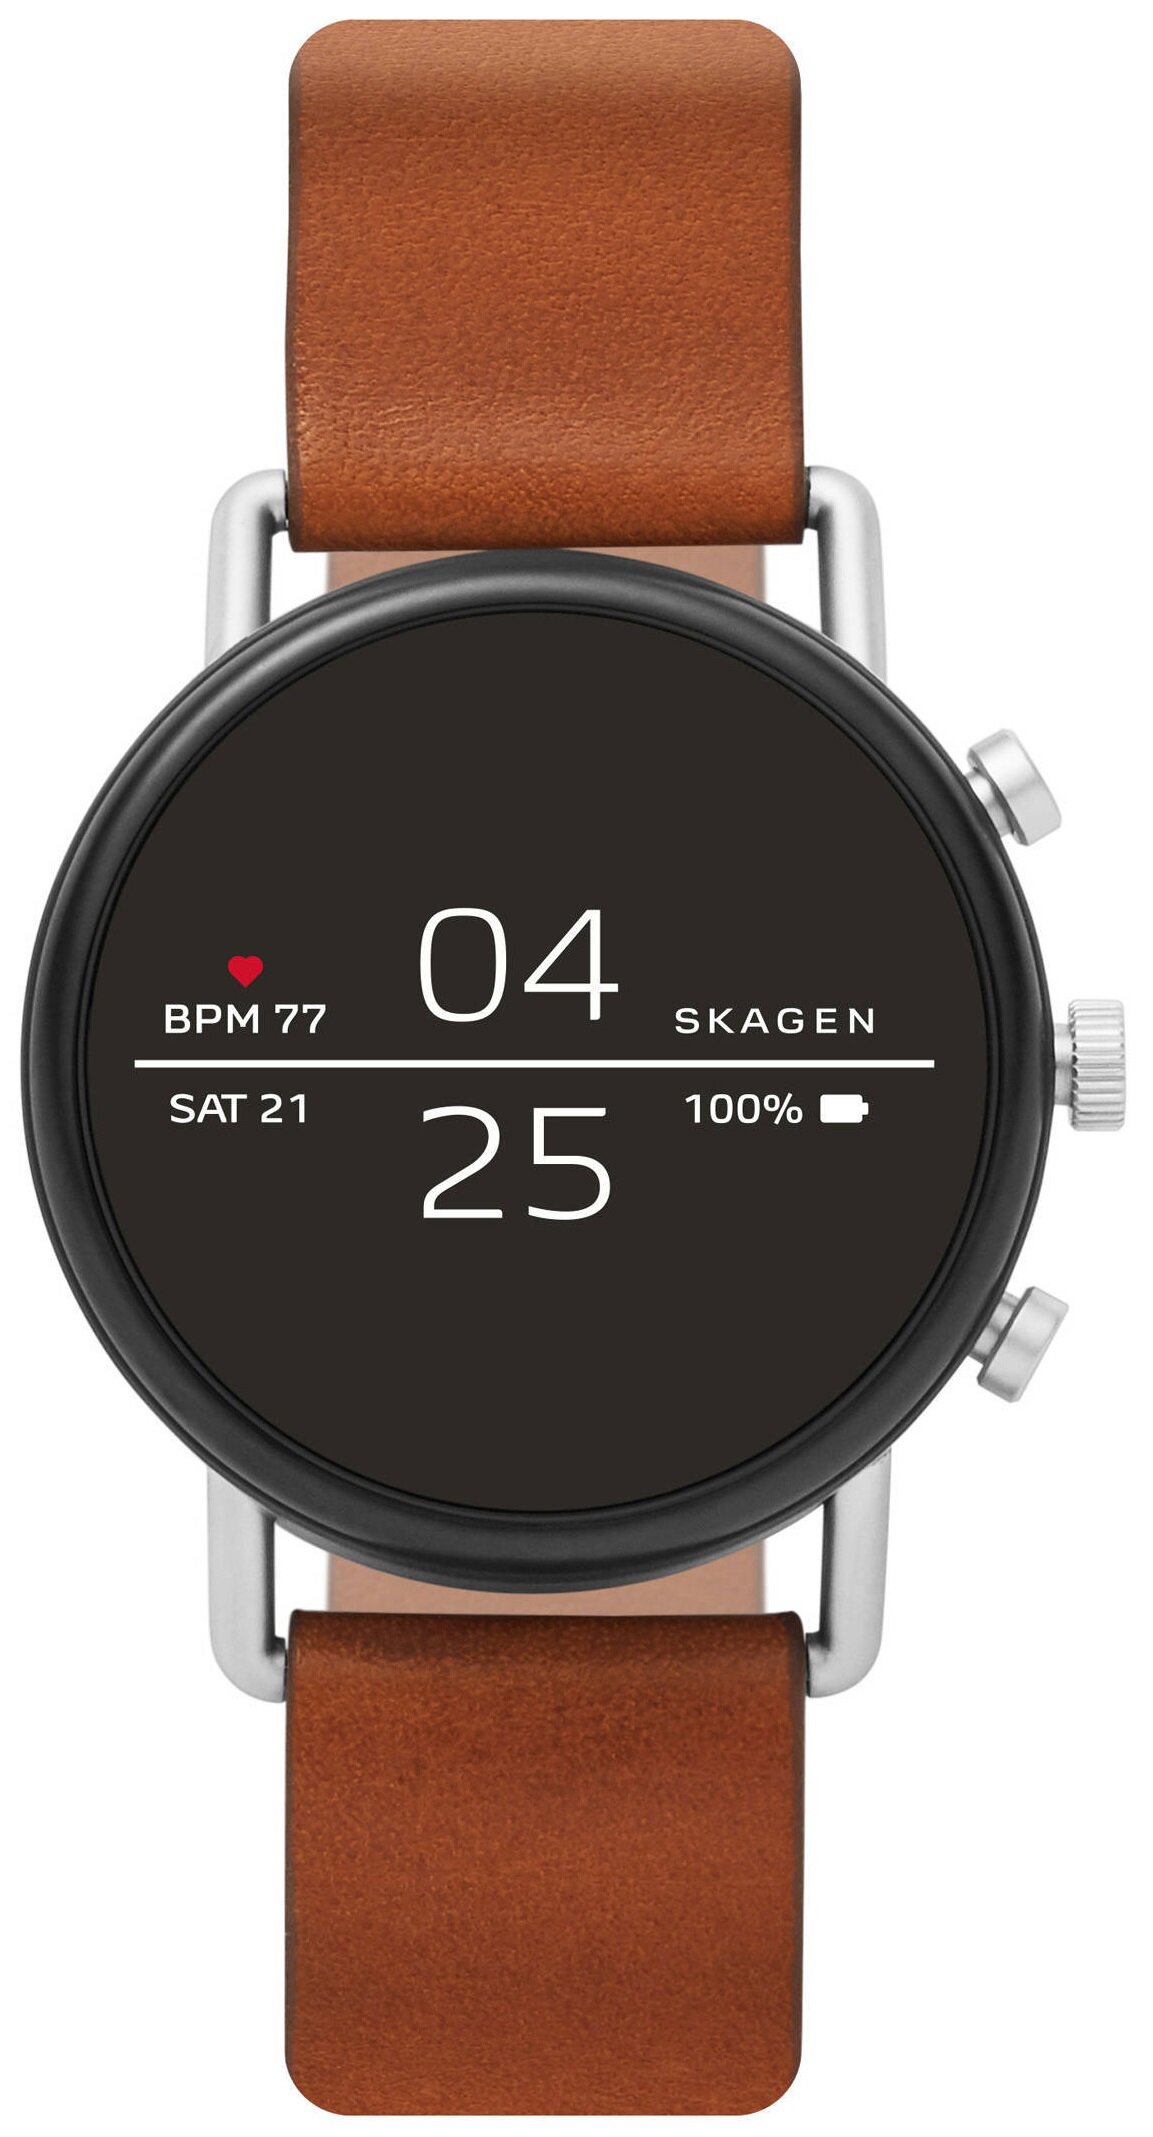 SKAGEN Falster 2 Brązowy Smartwatch - niskie ceny i opinie w Media Expert